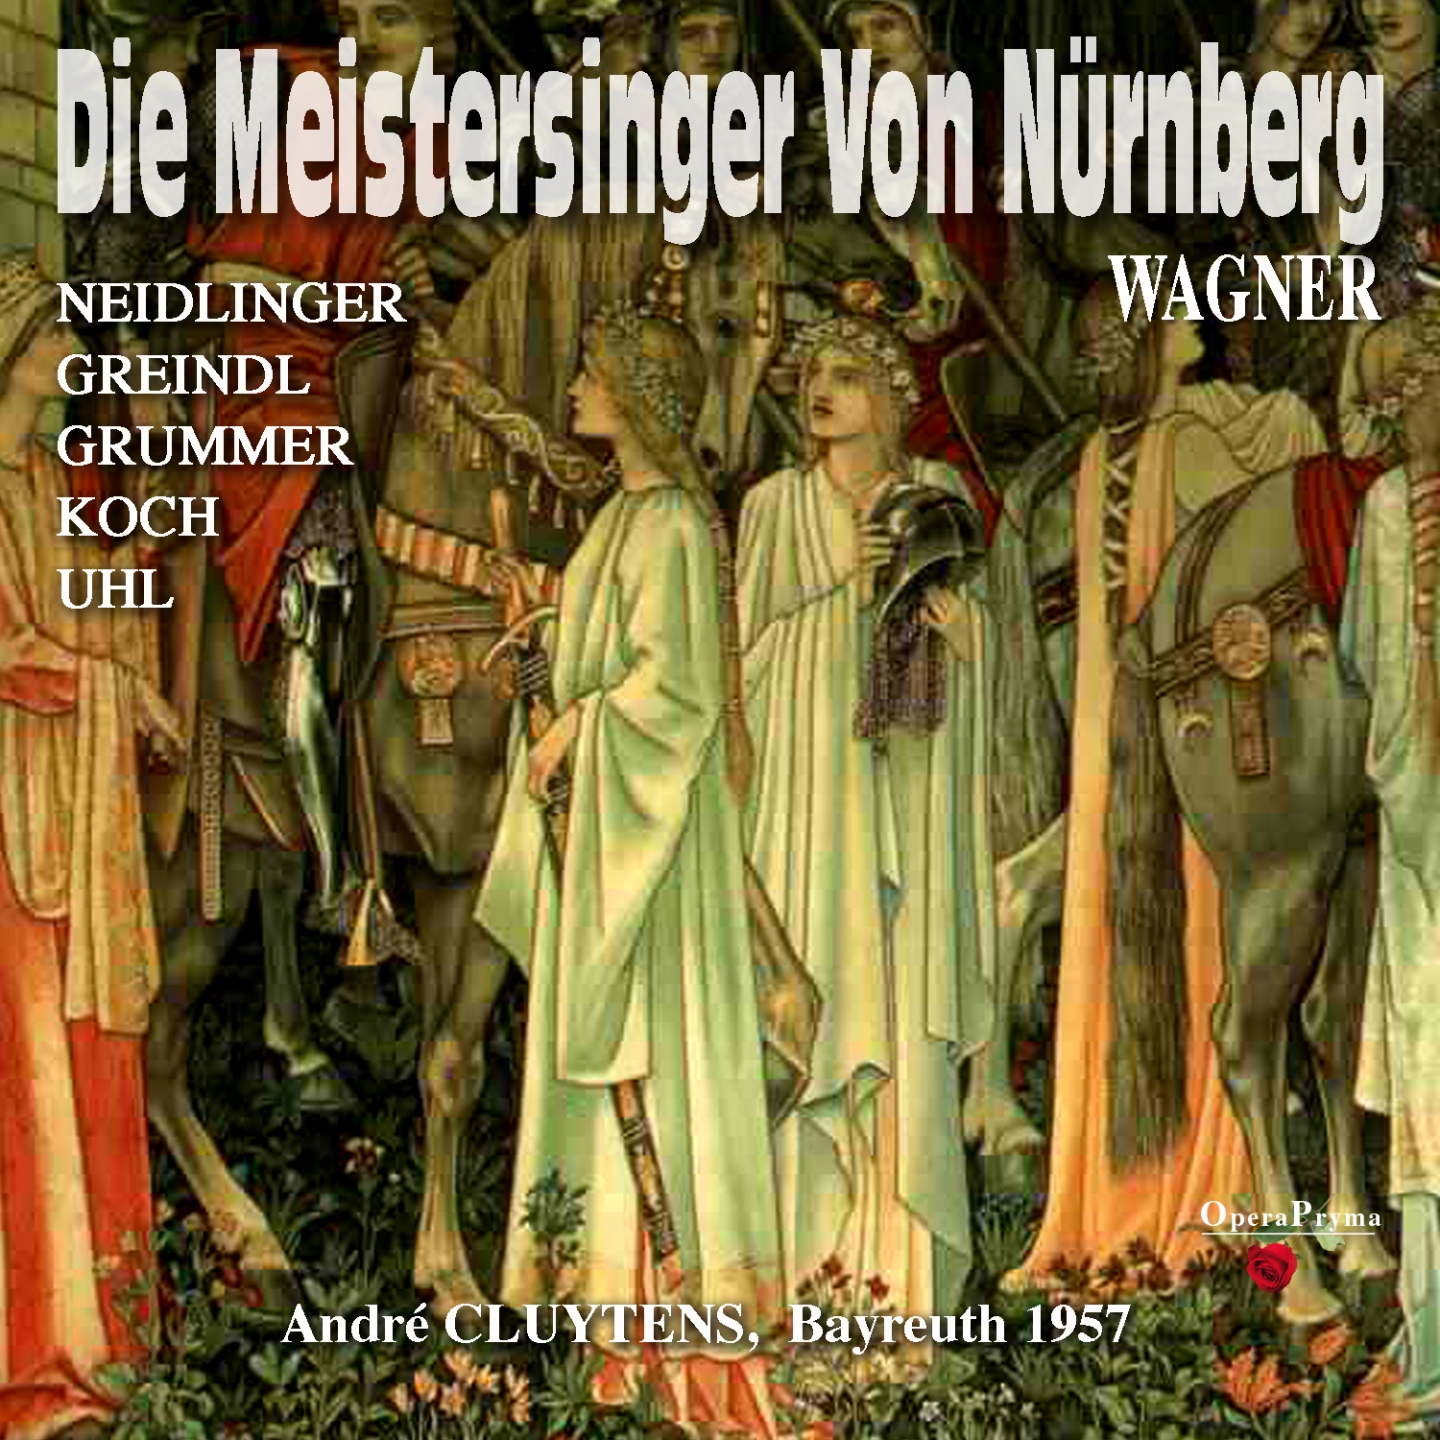 Die Meistersinger von Nü rnberg, Act II: " Geliebter, spare den Zorn!" Eva, Walther